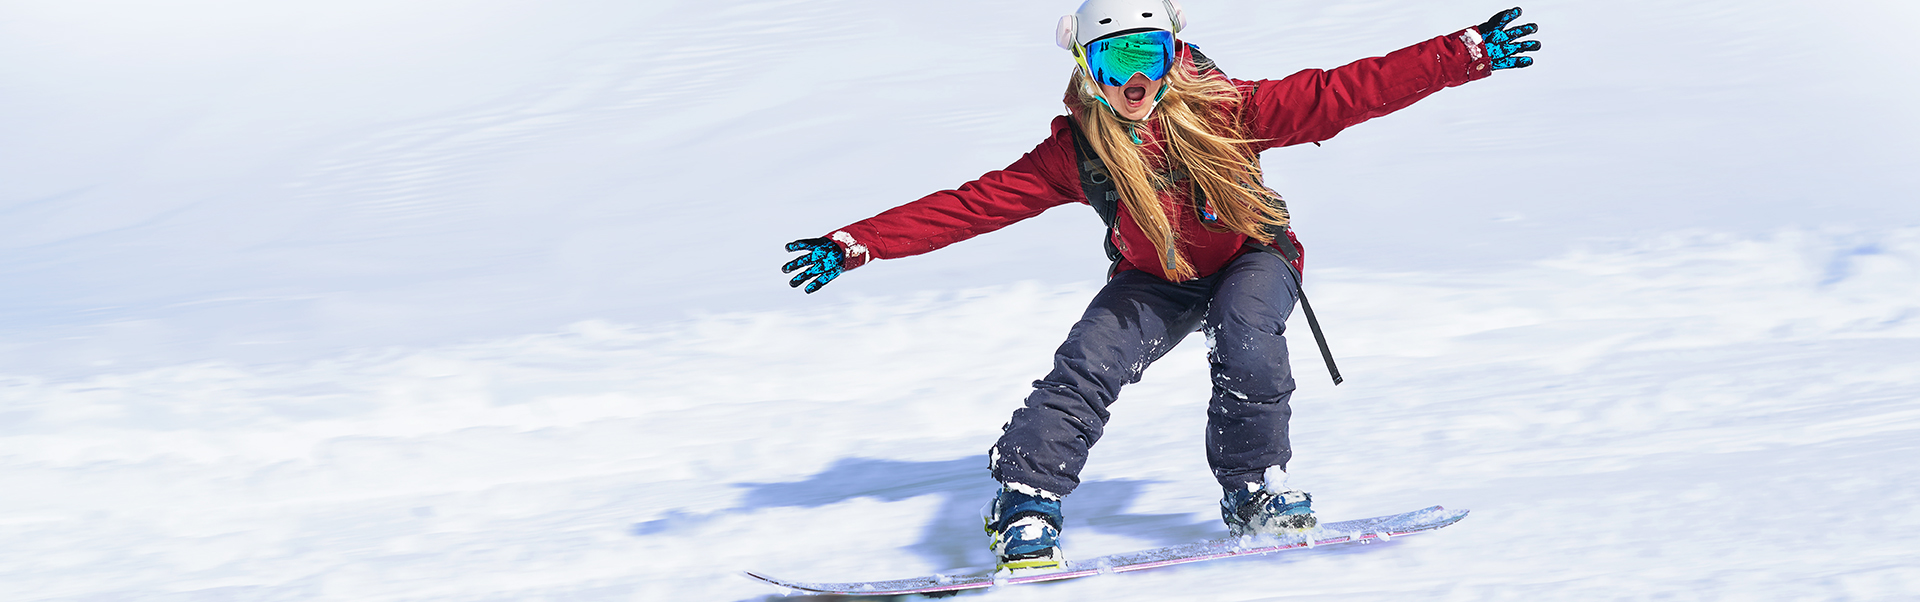 Flicka som åker snowboard